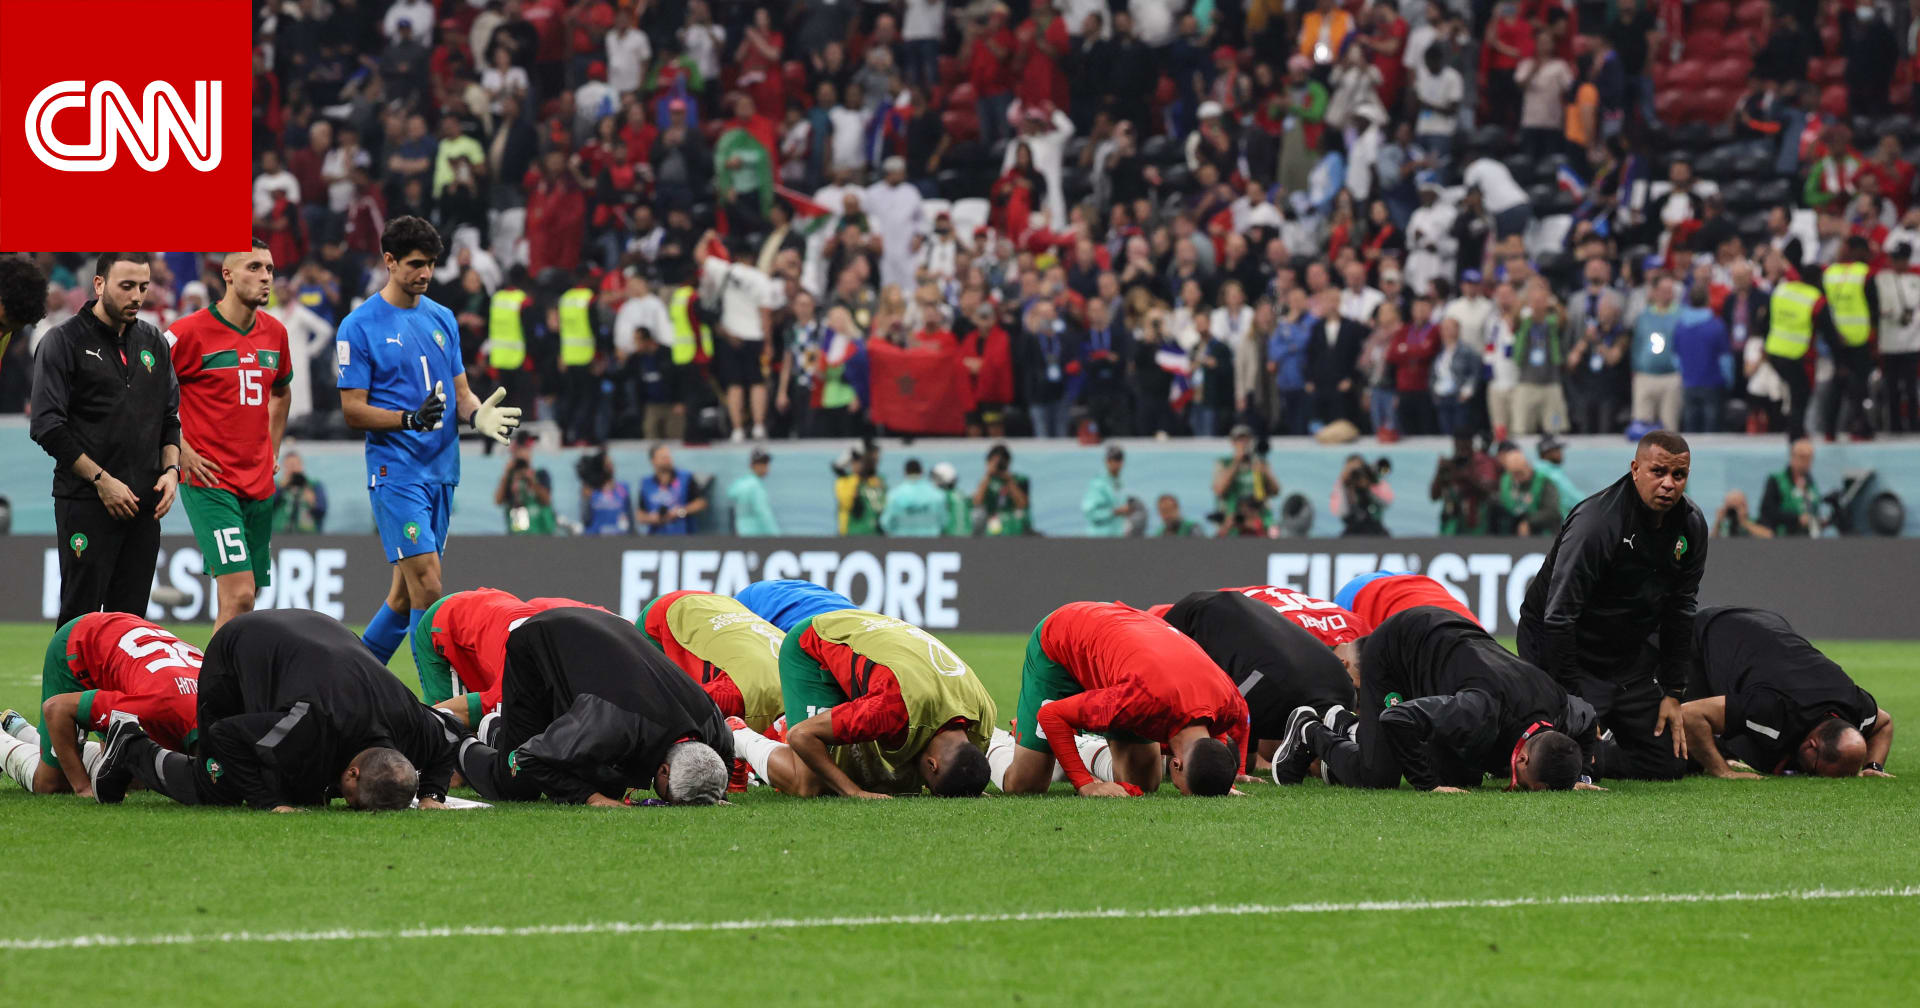 سبب ووجهة سجود لاعبي المغرب يثيران تفاعلا بعد الخسارة أمام فرنسا